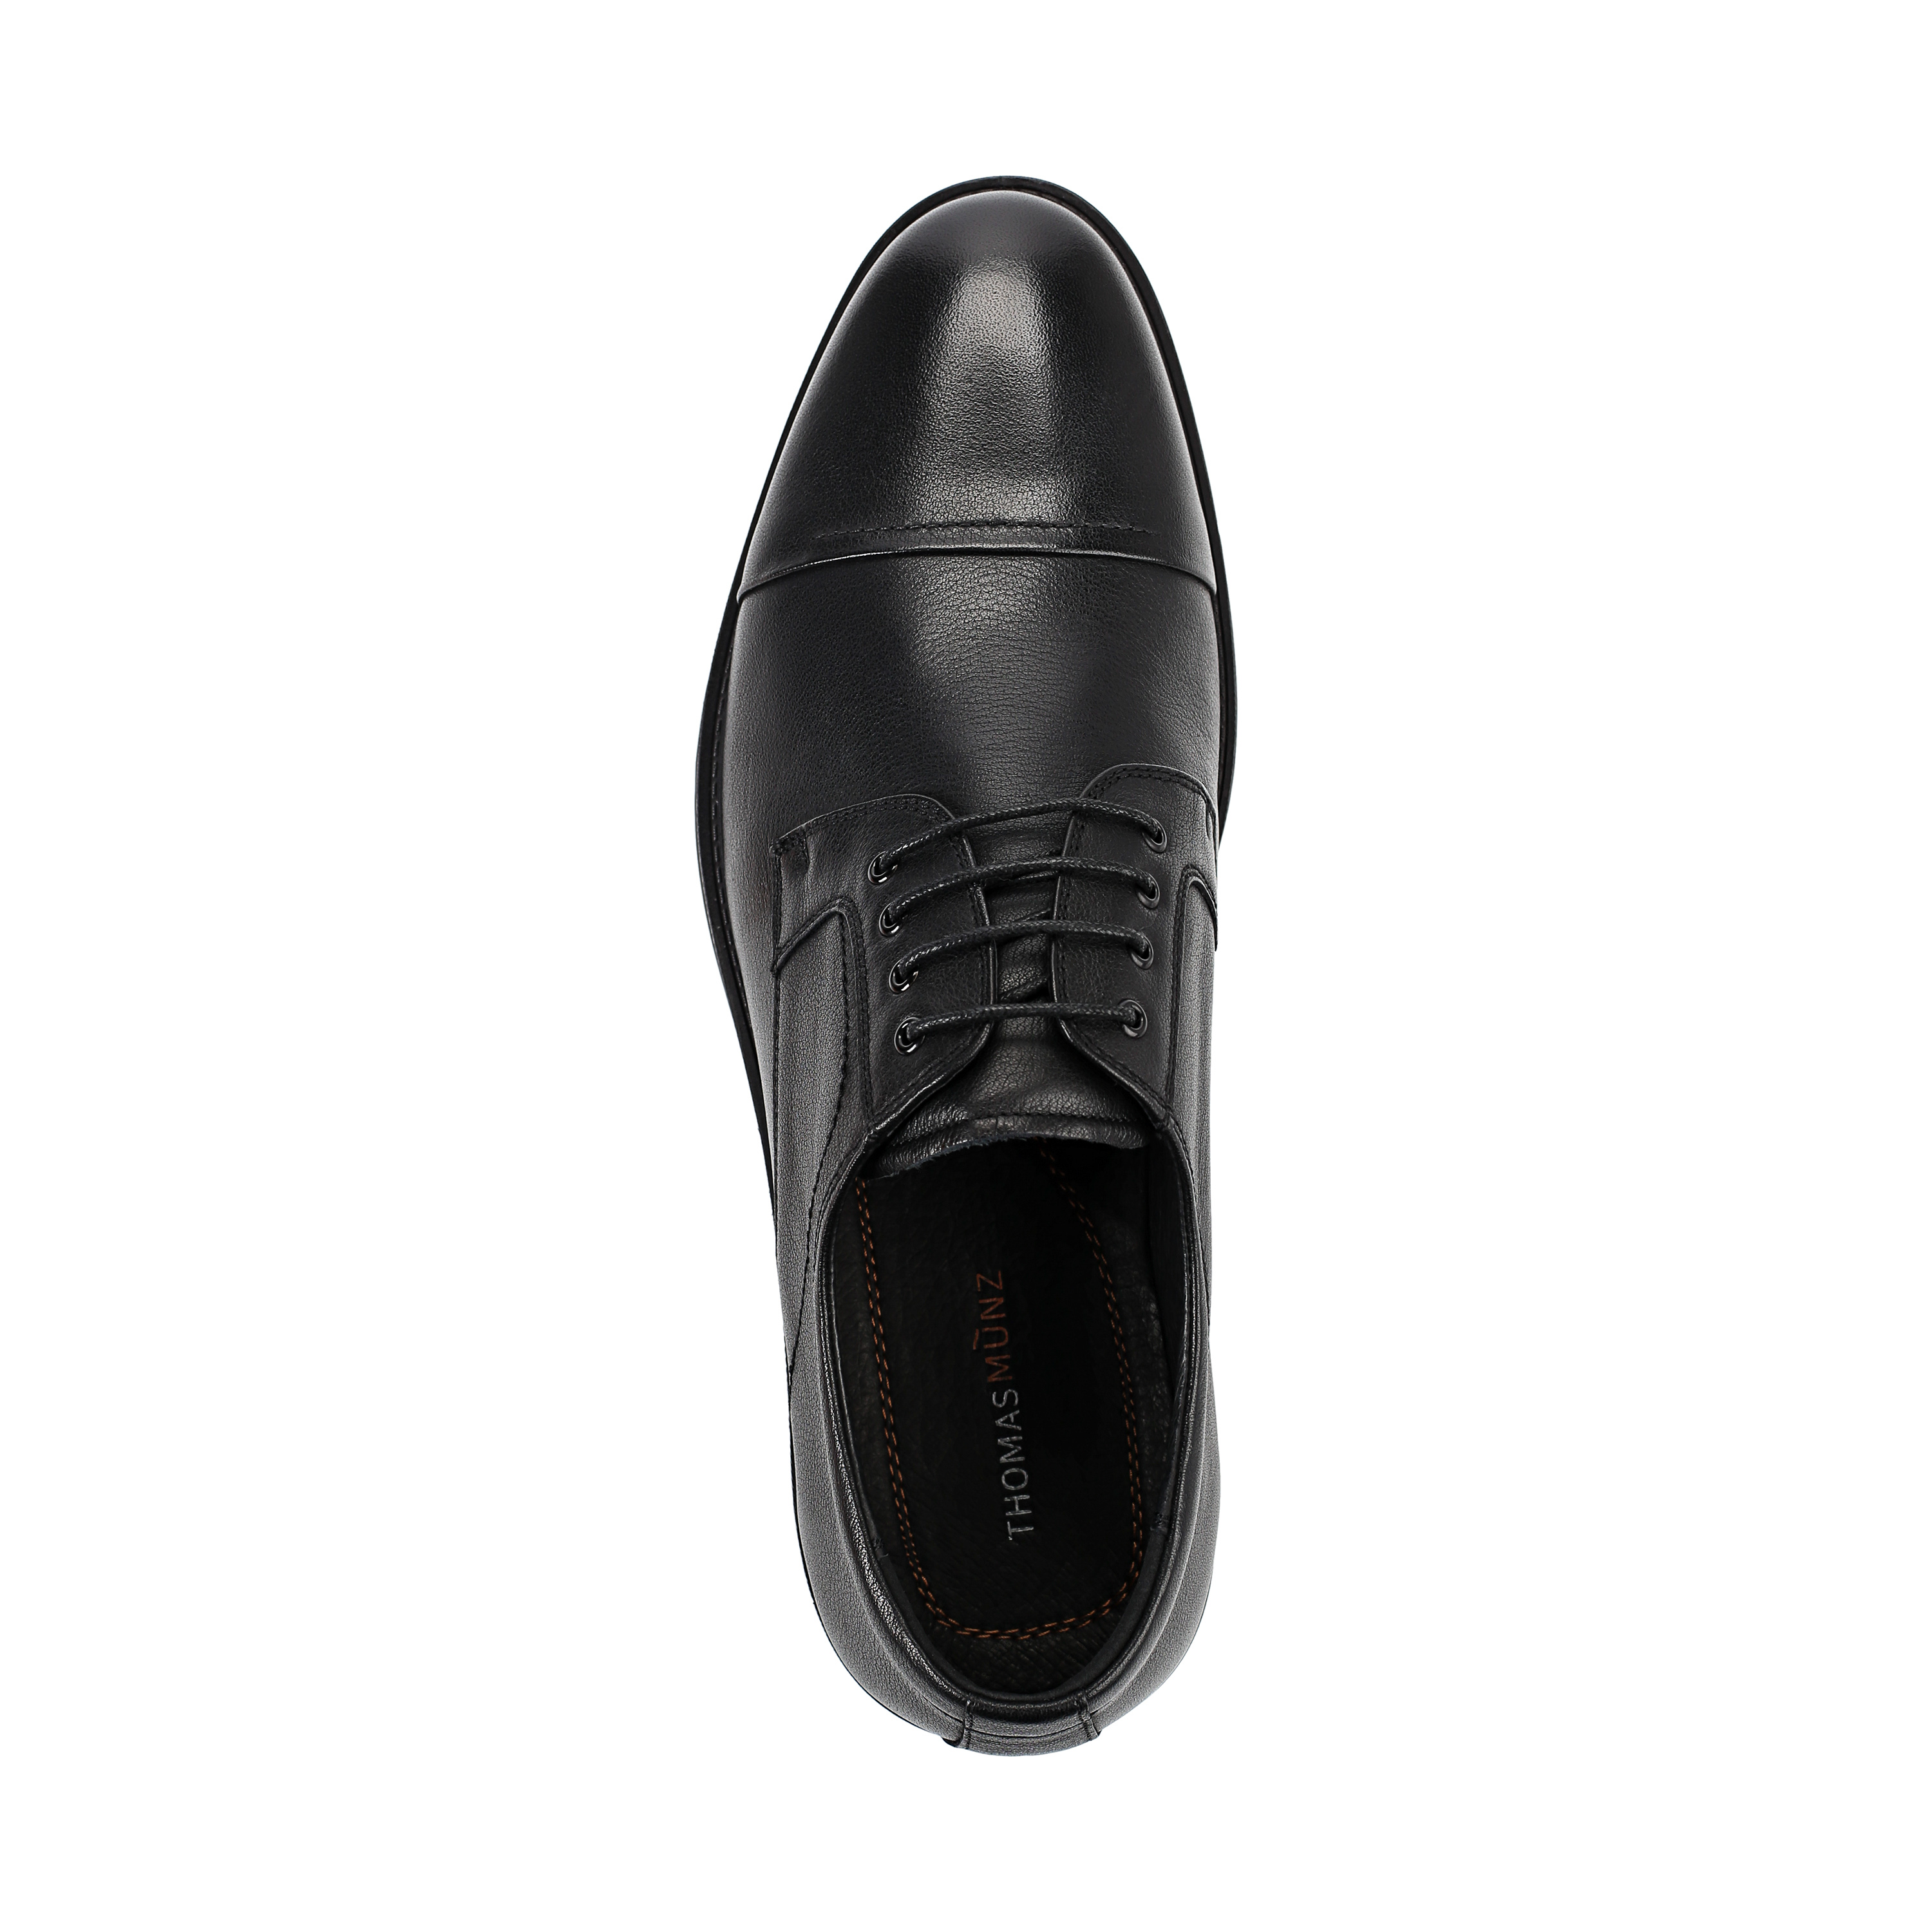 Туфли Thomas Munz 104-019E-1101, цвет черный, размер 41 дерби - фото 5